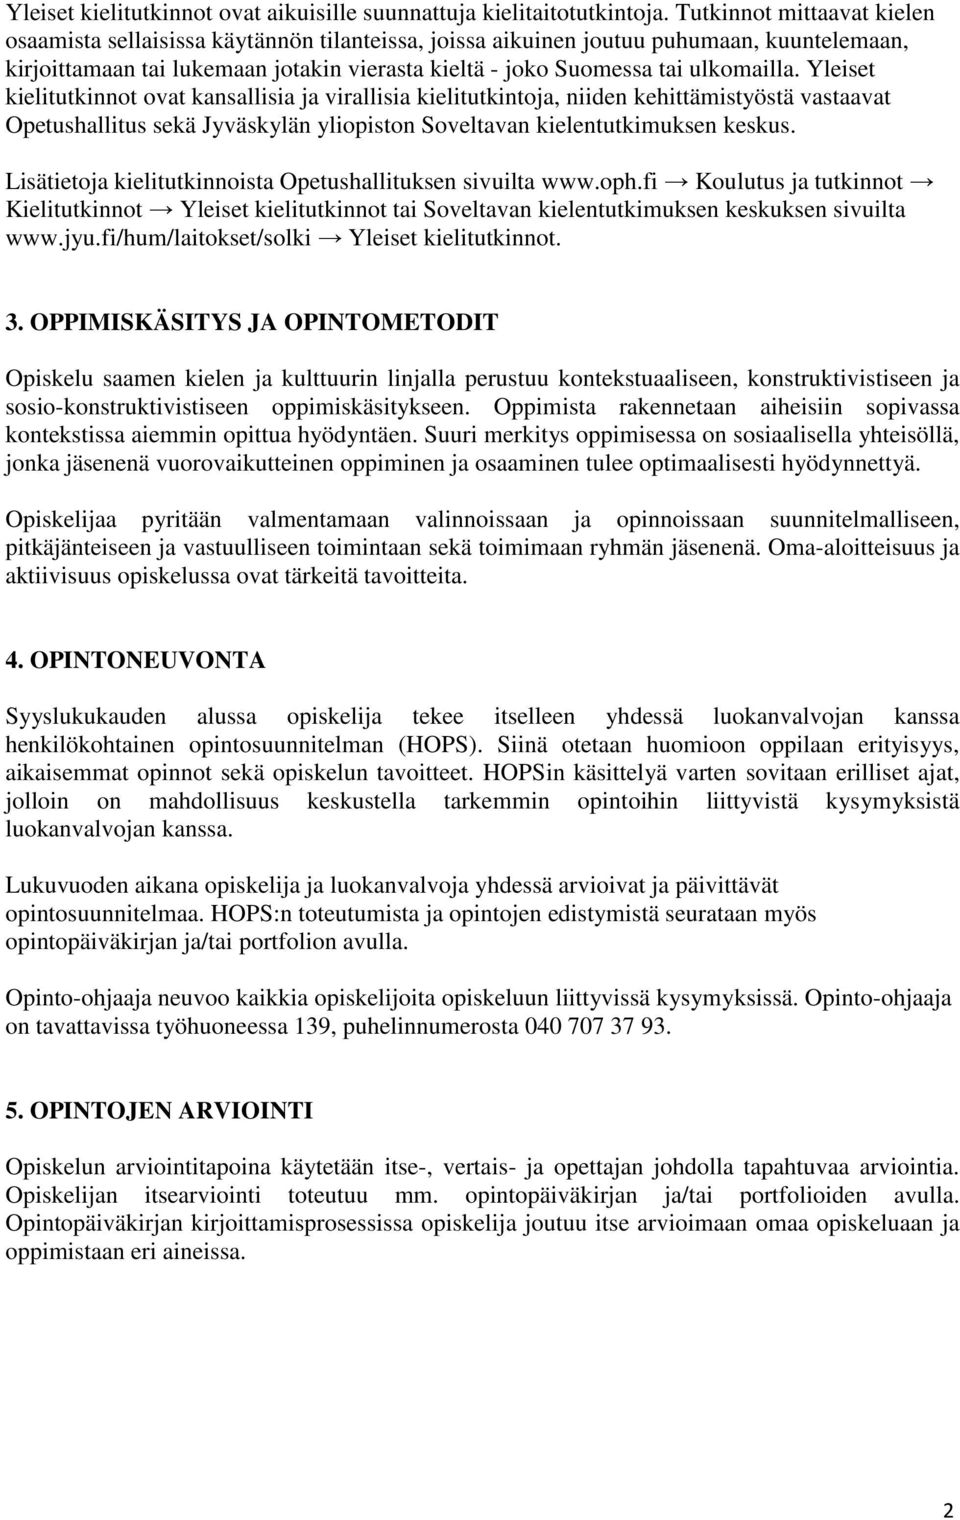 ulkomailla. Yleiset kielitutkinnot ovat kansallisia ja virallisia kielitutkintoja, niiden kehittämistyöstä vastaavat Opetushallitus sekä Jyväskylän yliopiston Soveltavan kielentutkimuksen keskus.